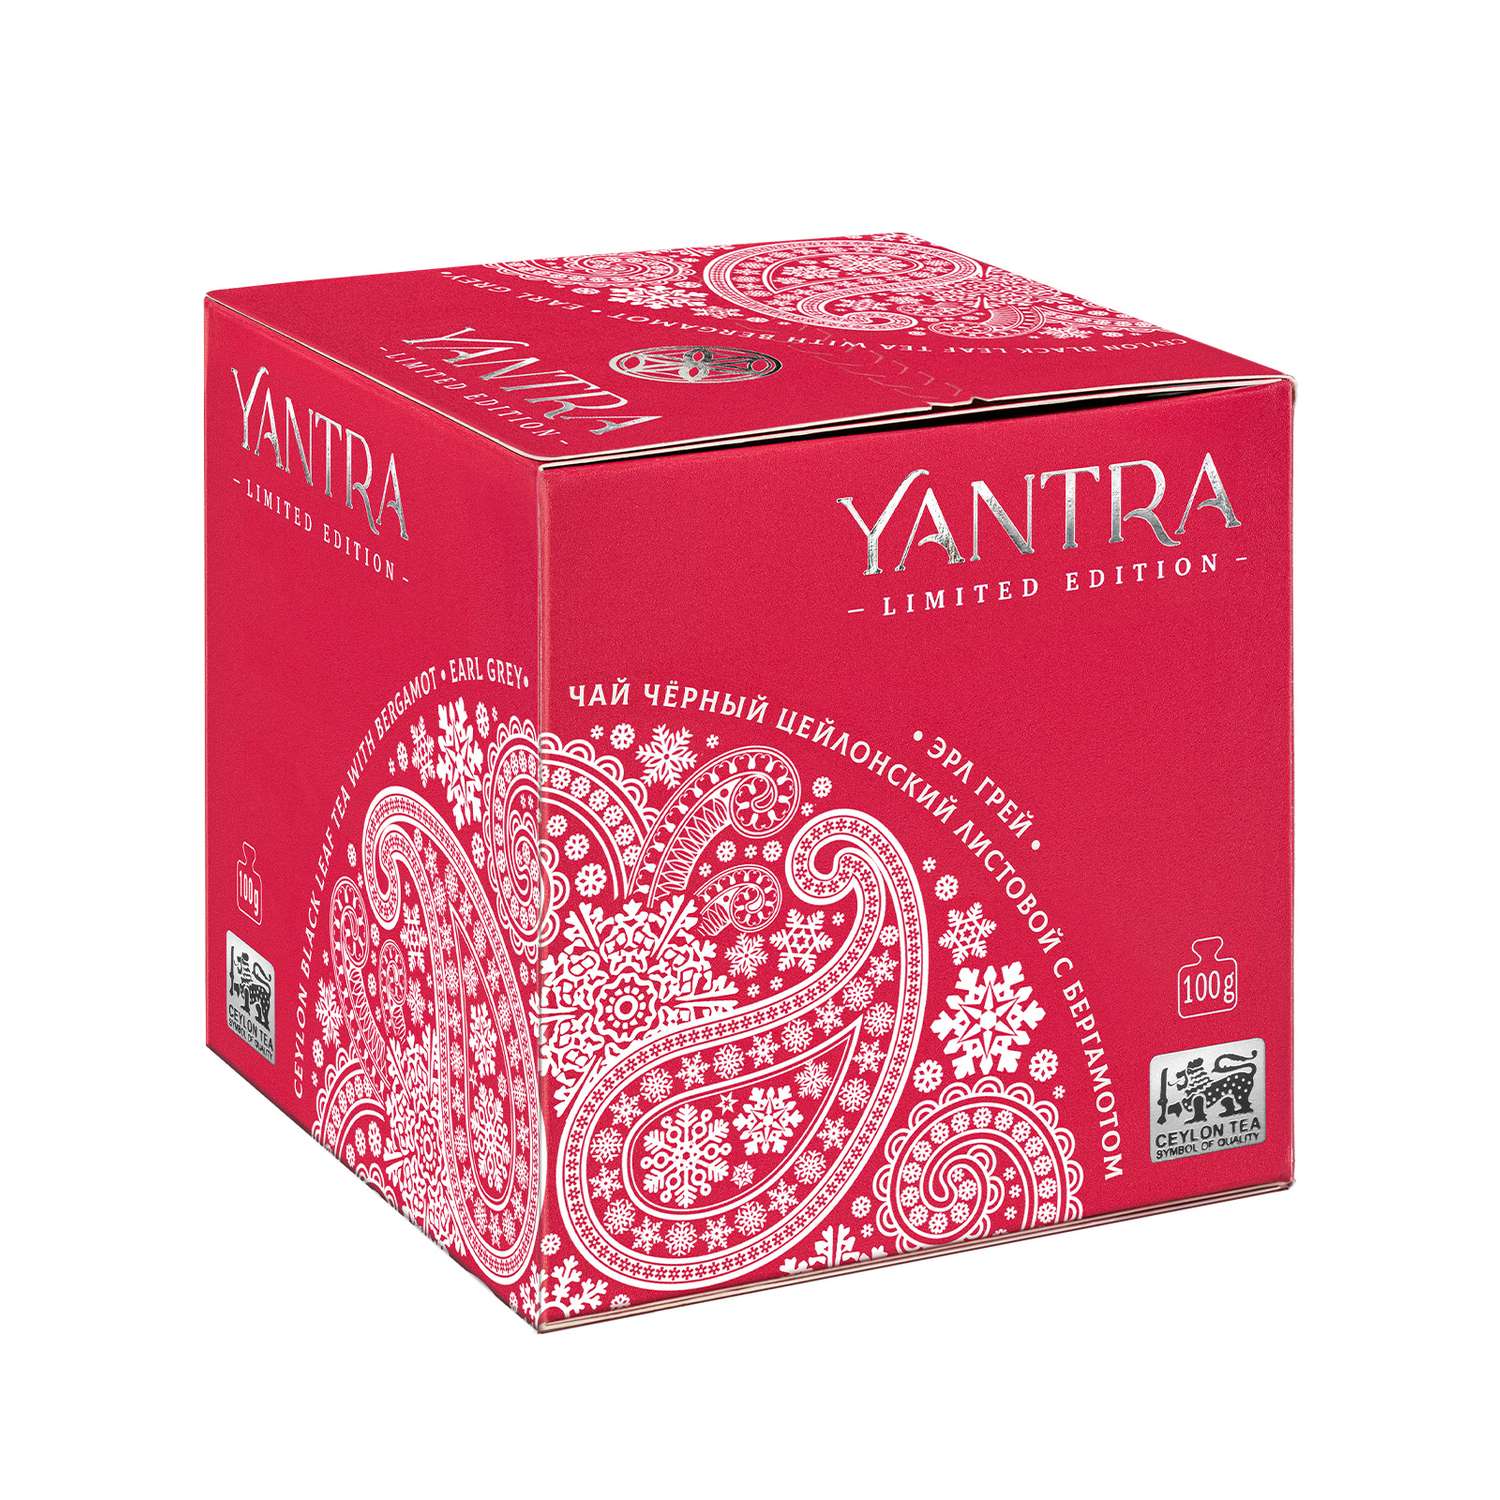 Чай Limited Edition Yantra чёрный листовой с бергамот Earl Grey стандарт FBOP 100 г - фото 1